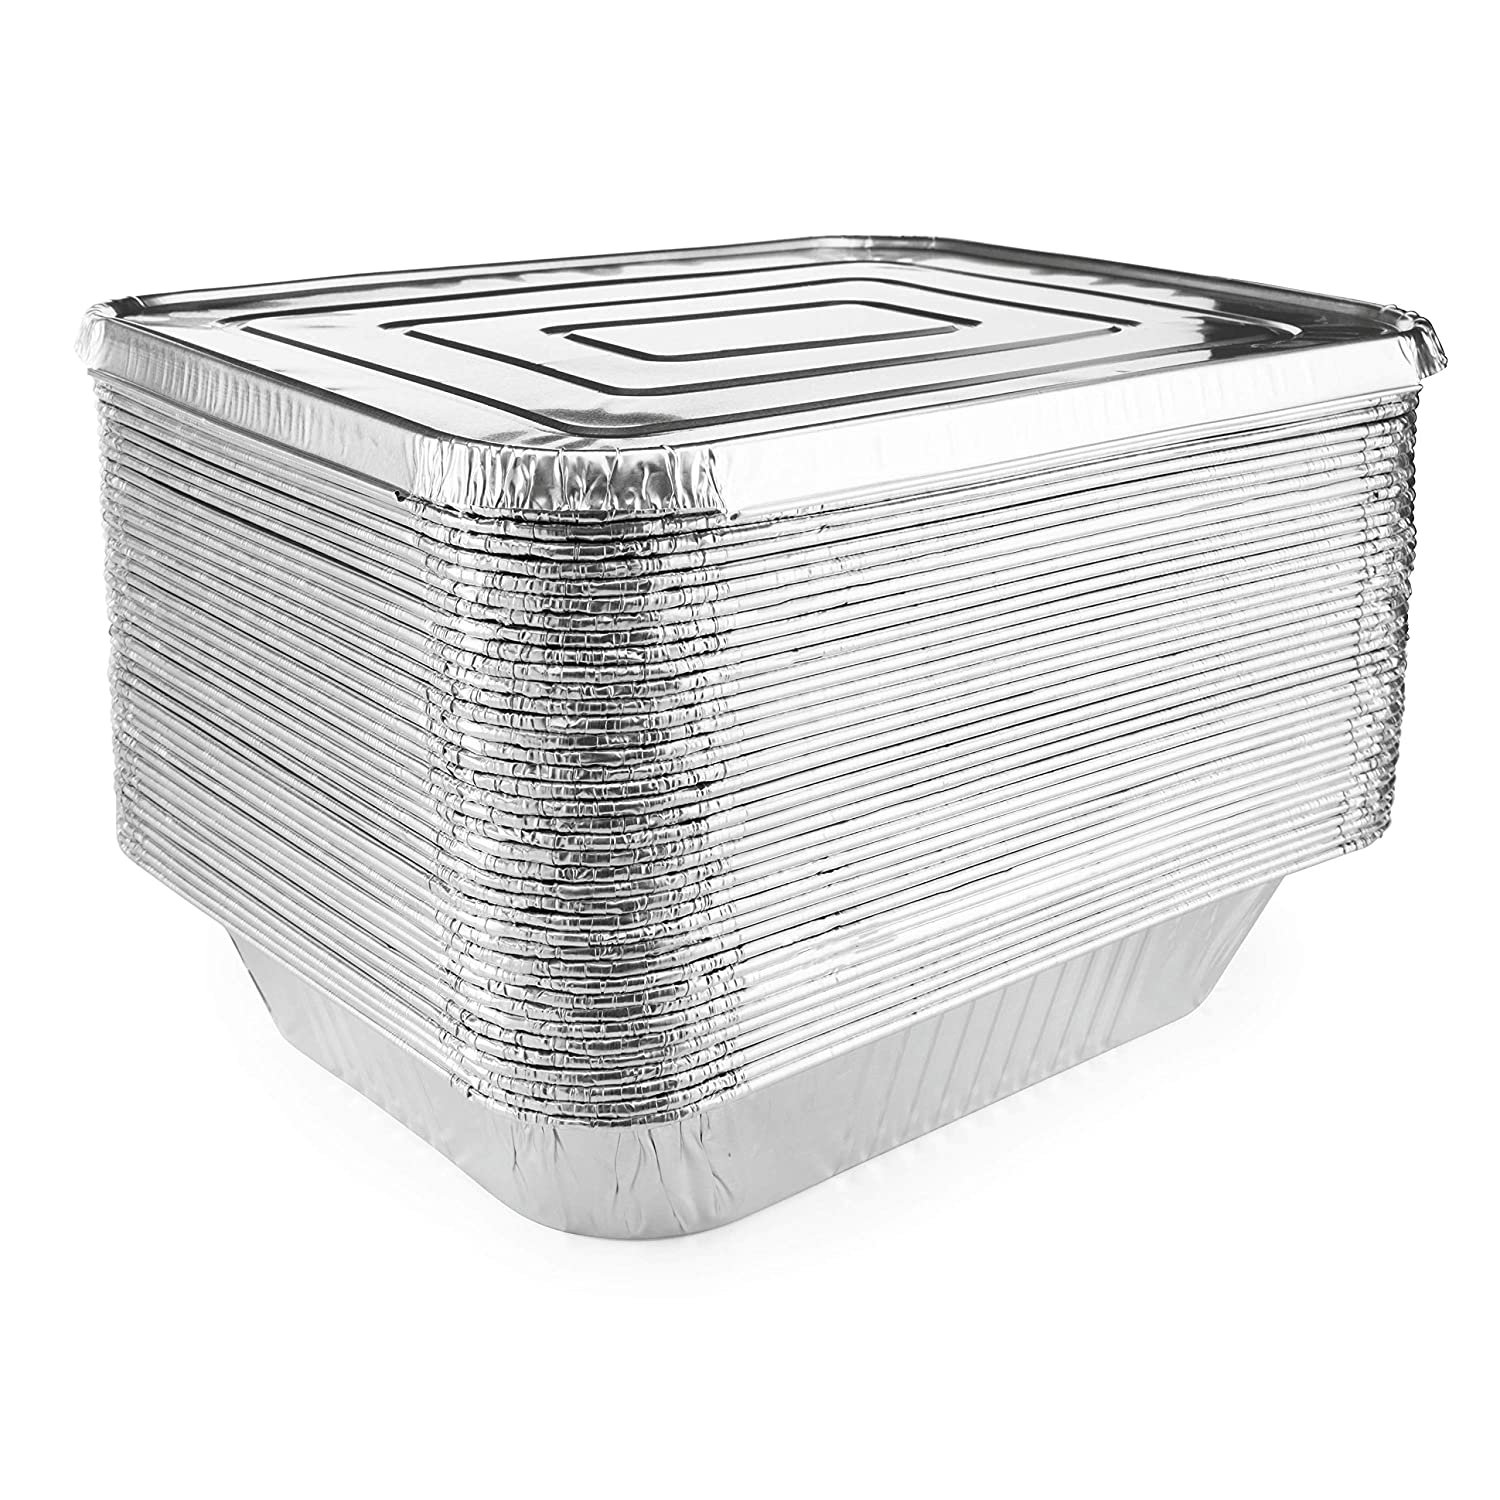 Aluminum Pans 9x13 Disposable Foil Pans Half Size Aluminum Trays with Lids  Heavy Duty Steam Table Deep - Tin Foil Pans, Bakeware, Lasagna Pans